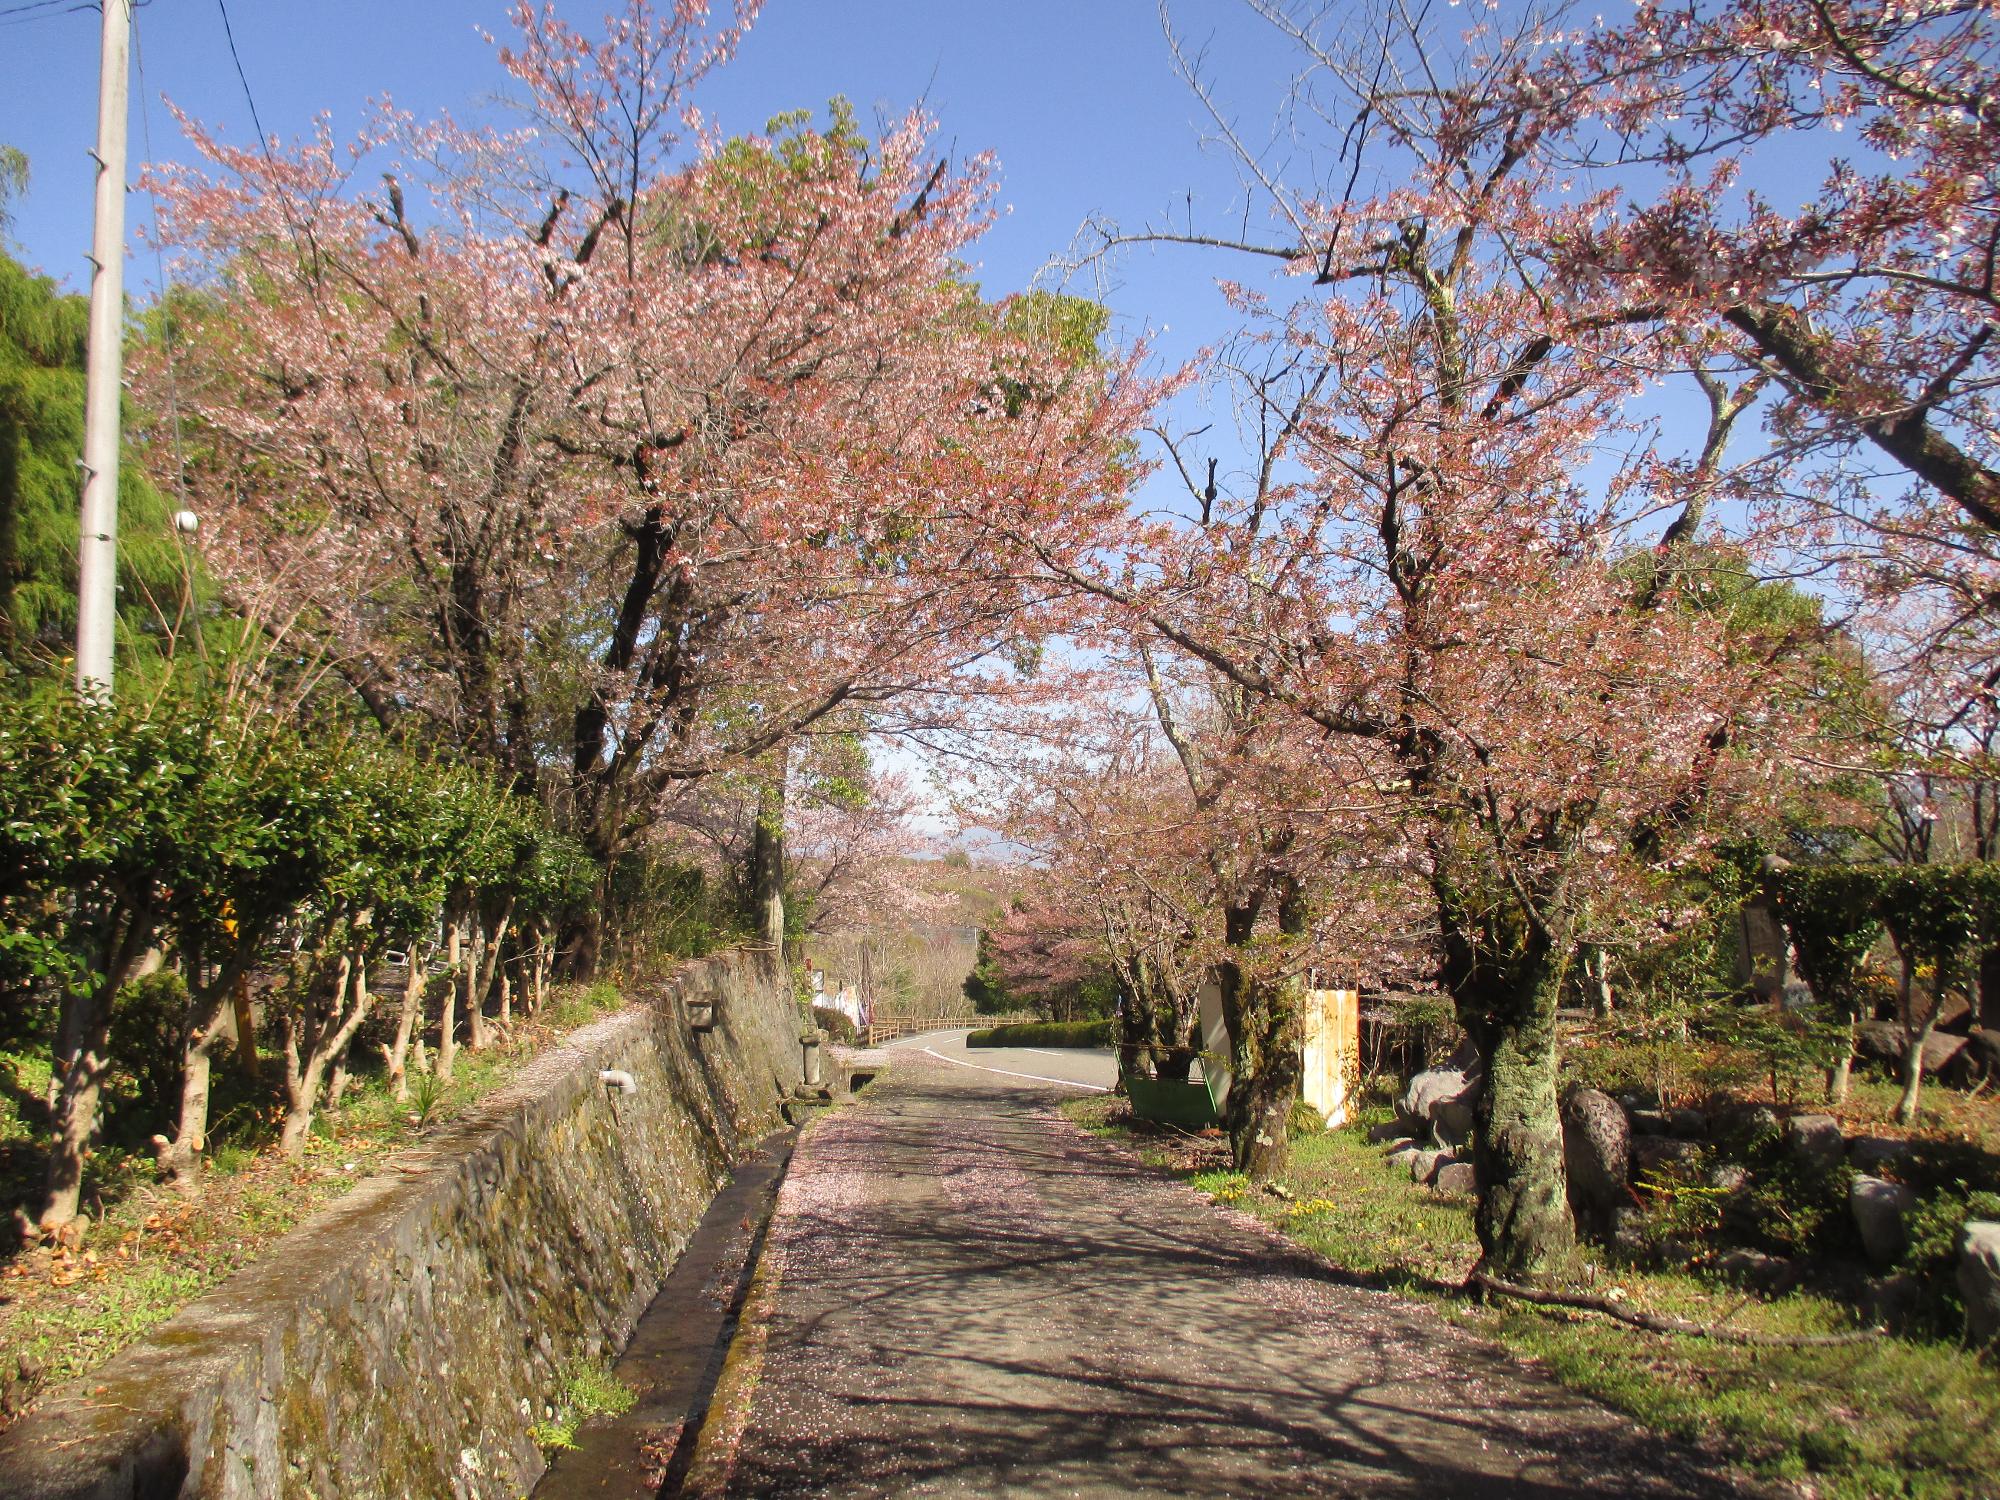 シルクの里公園の桜の開花状況